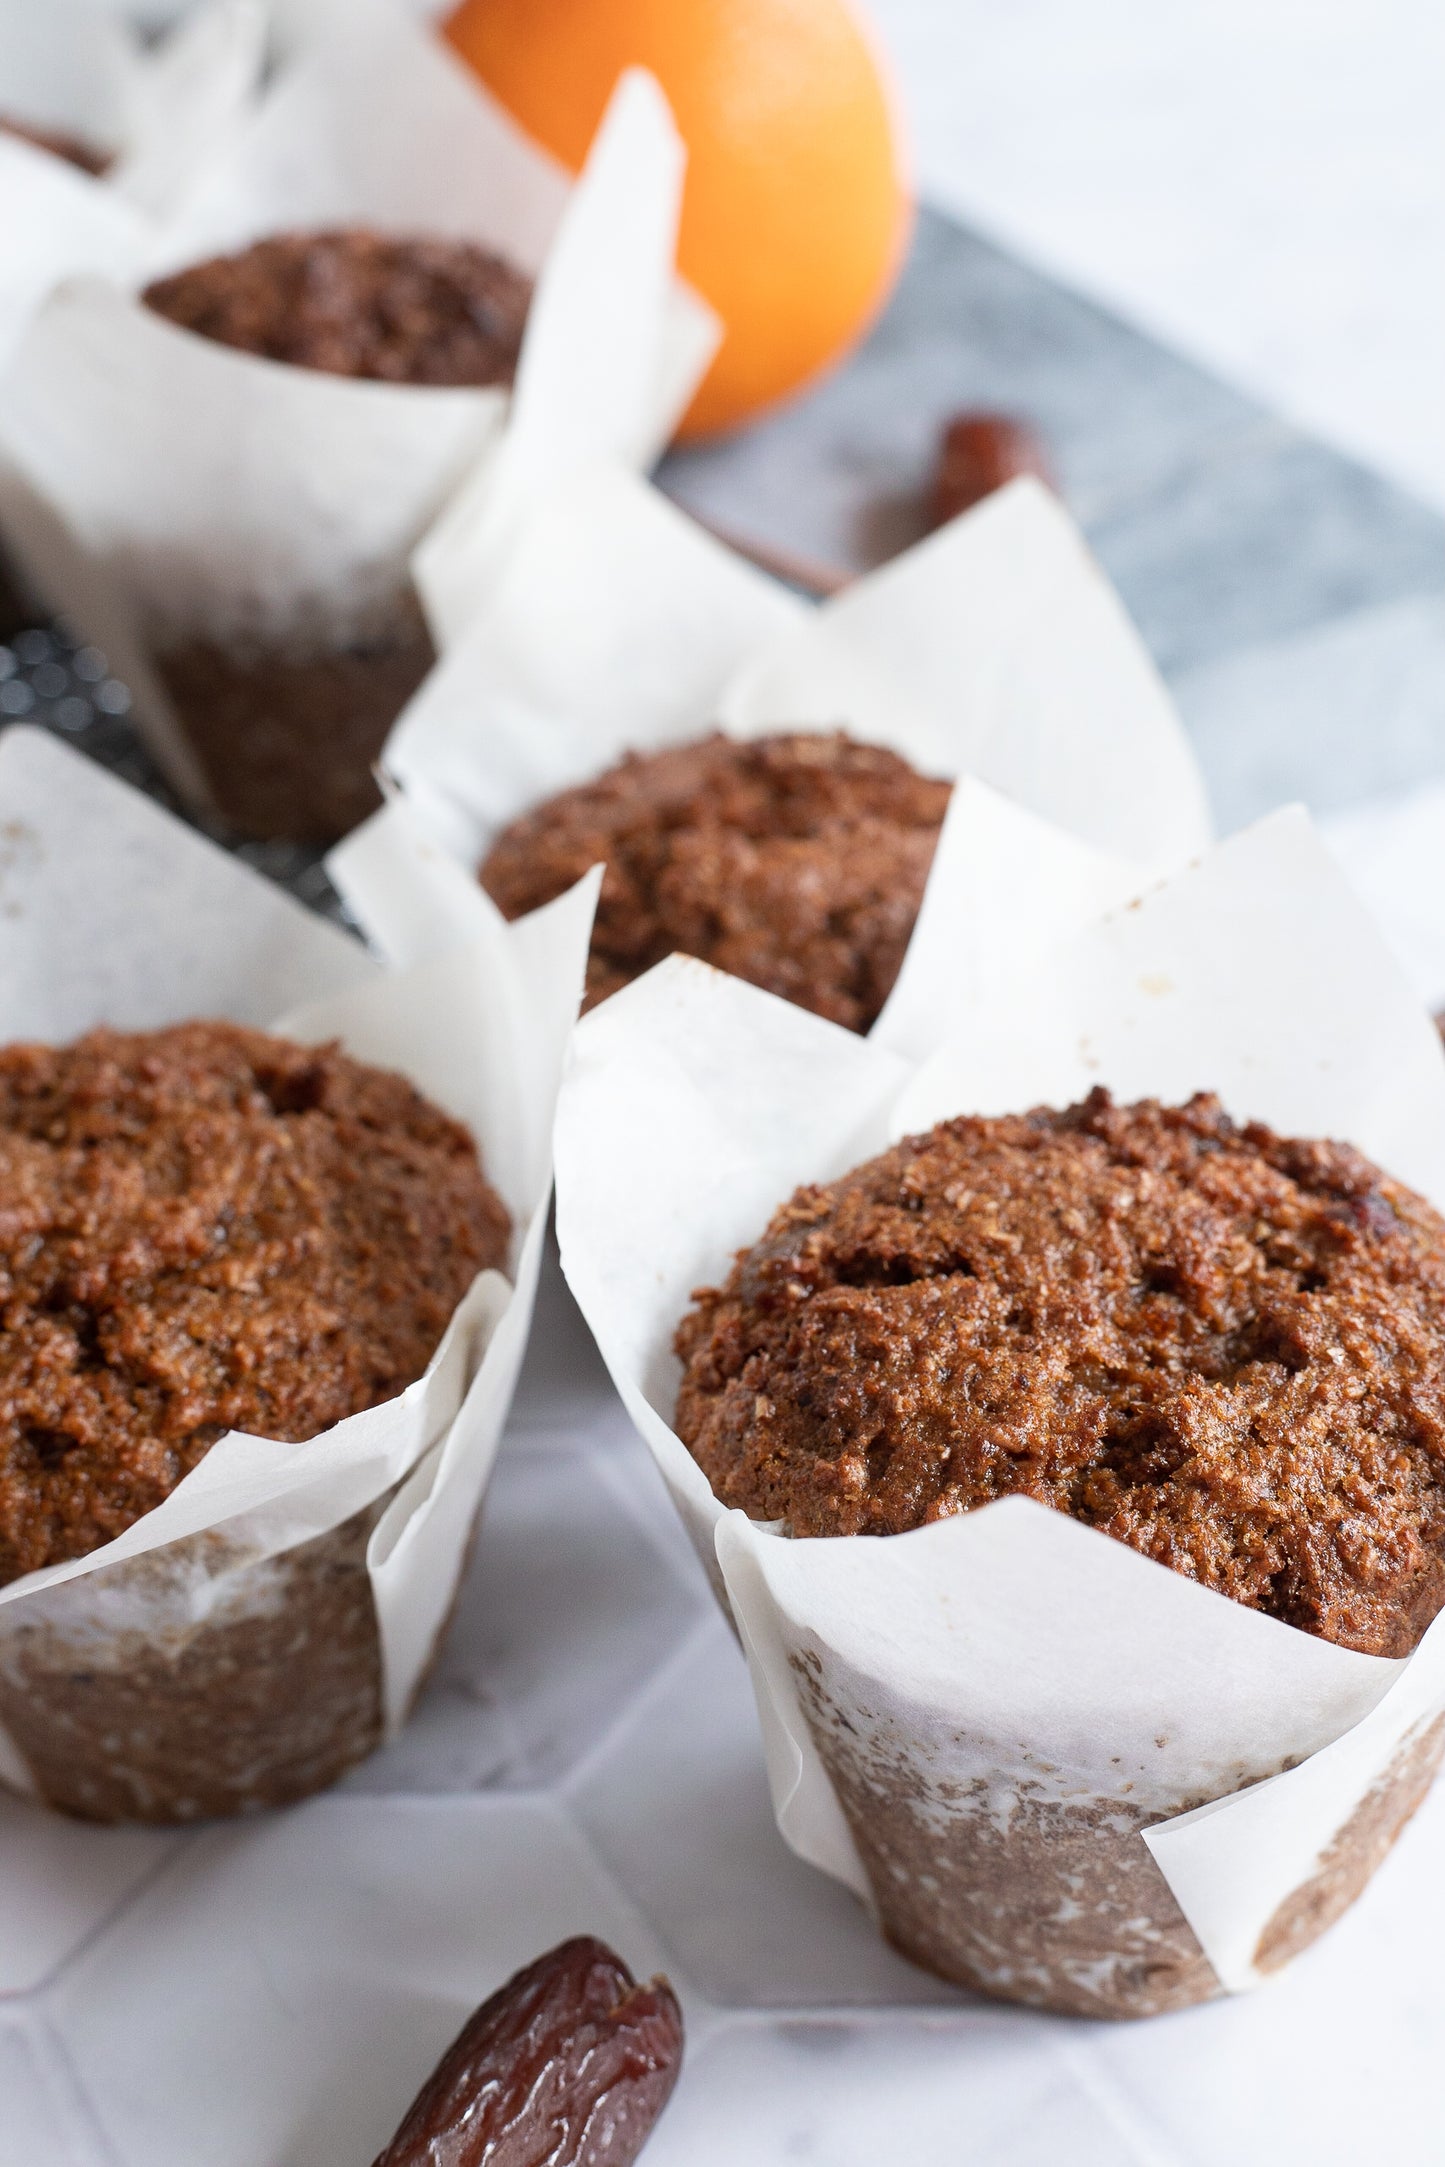 Naturally sweetened bran muffins